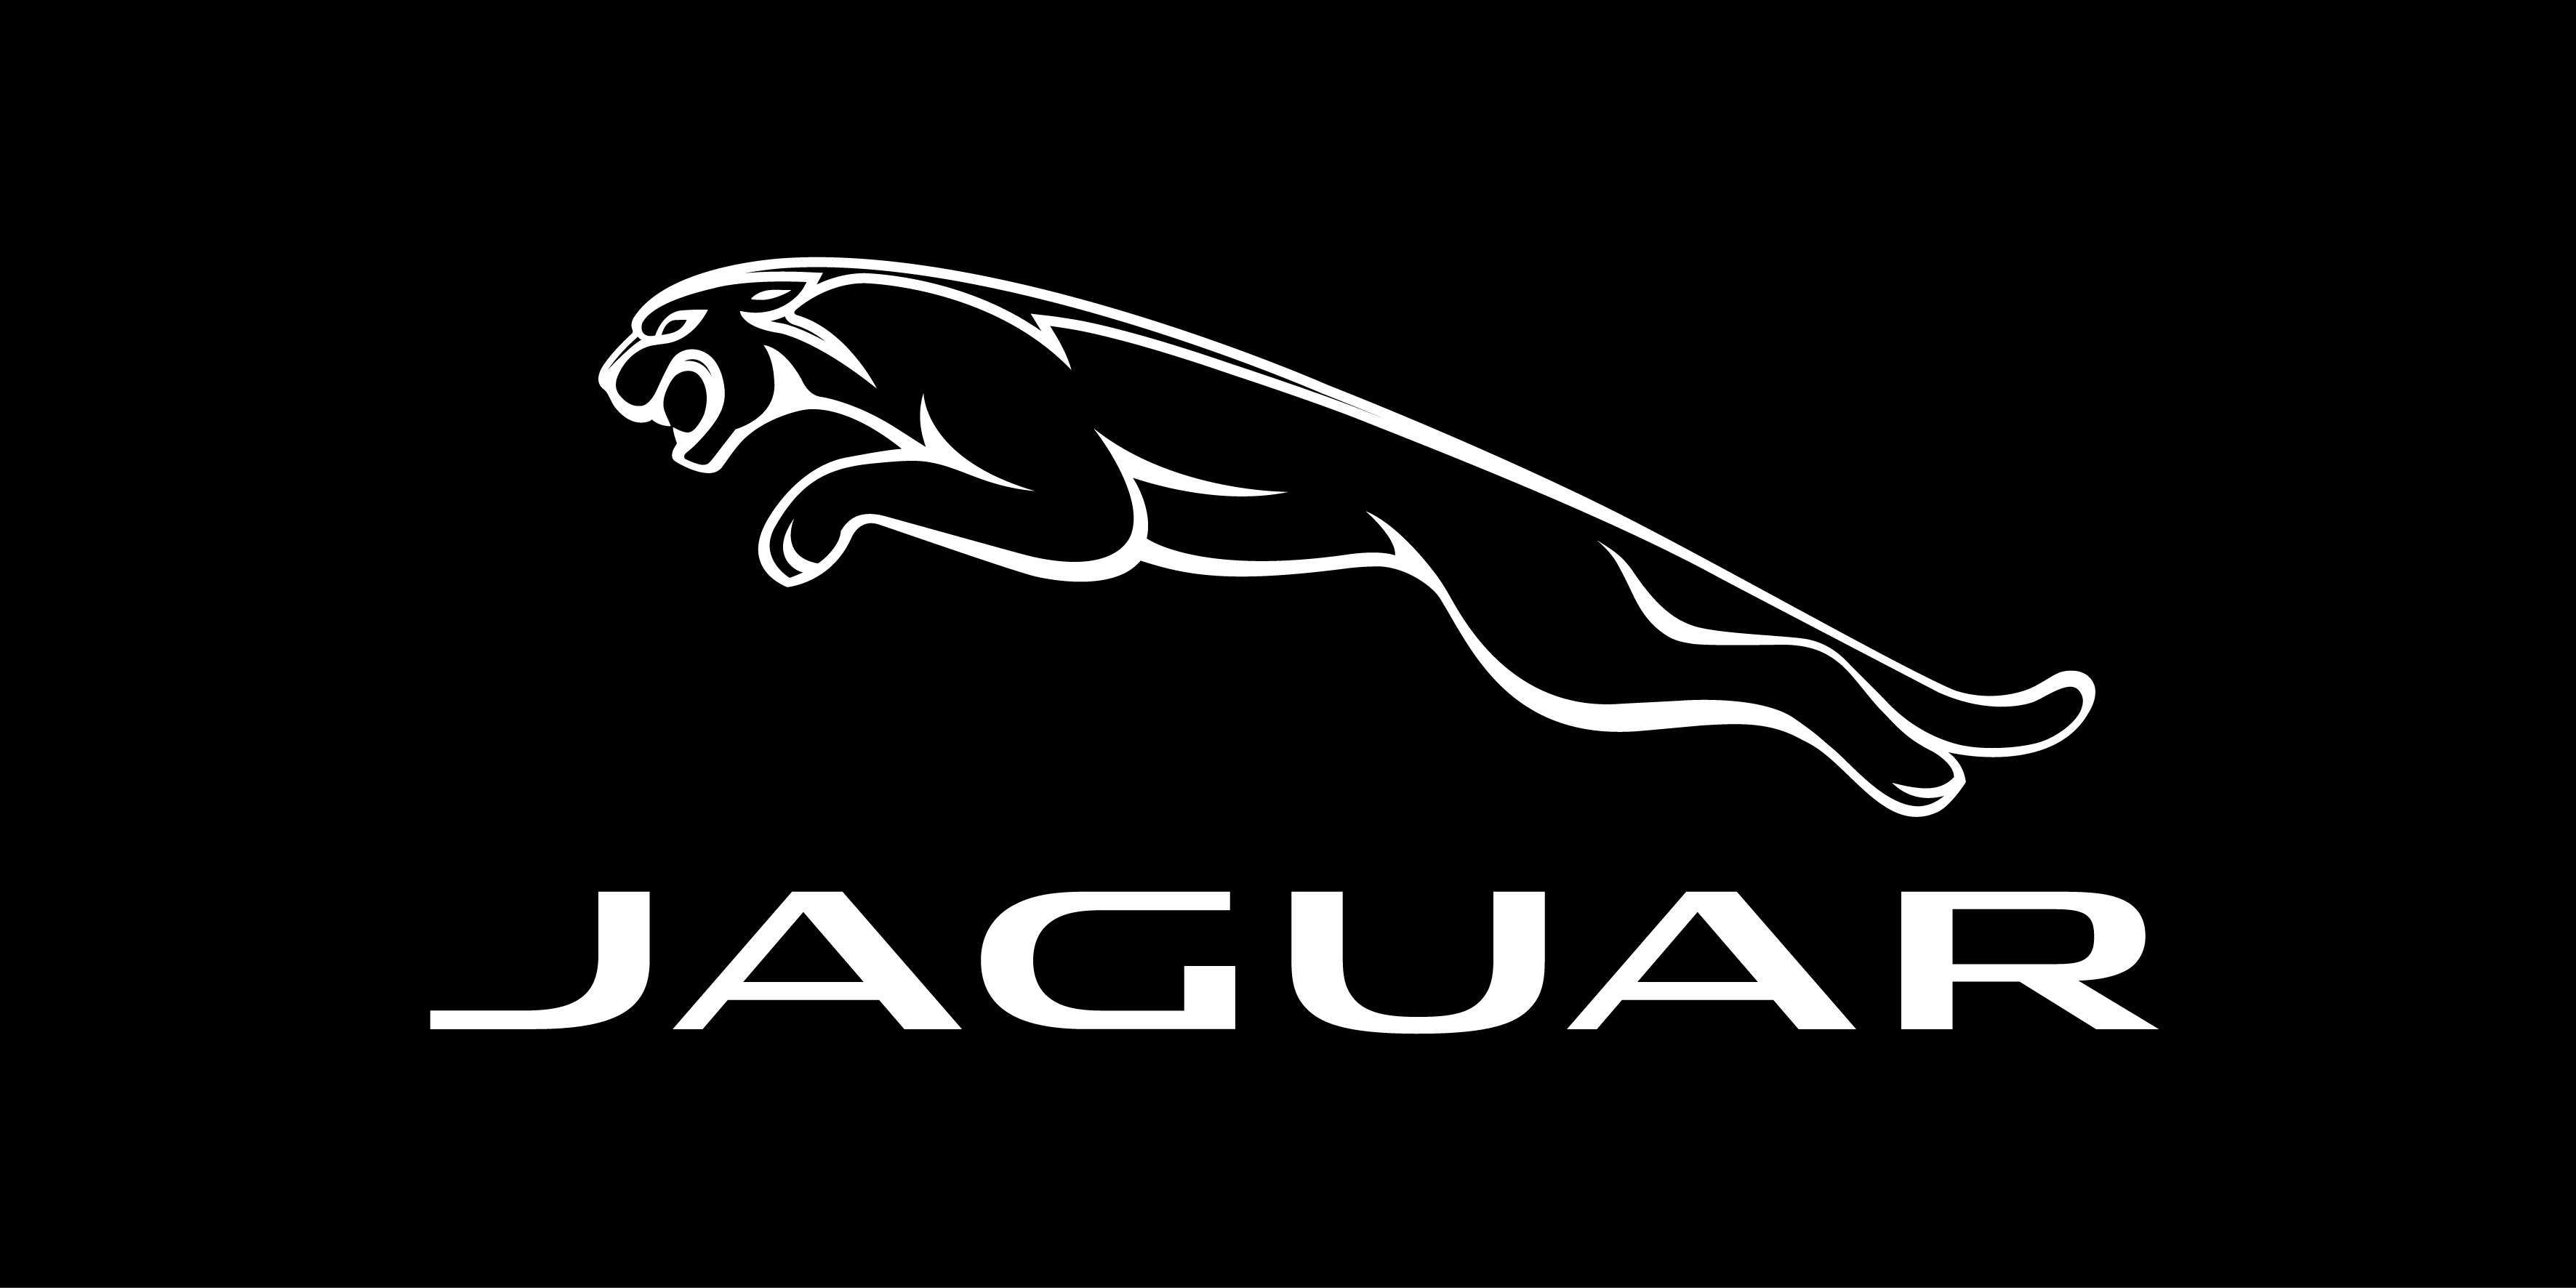 jaguar logo wallpaper 3d